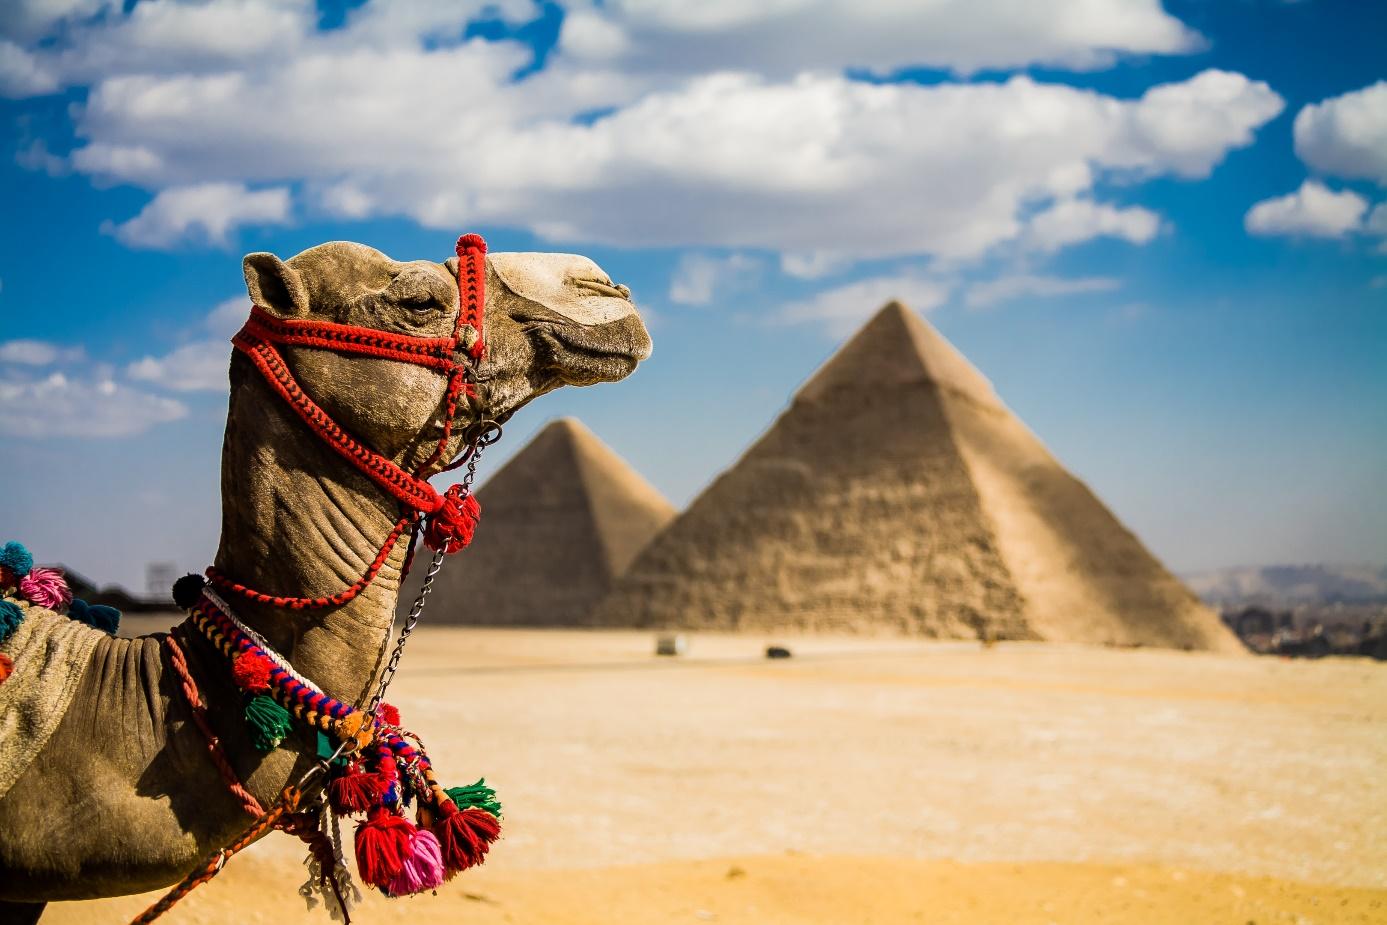 Egipt wielbłąd, kolorowa uprzęż, wielbłąd w Egipcie na tle piramid